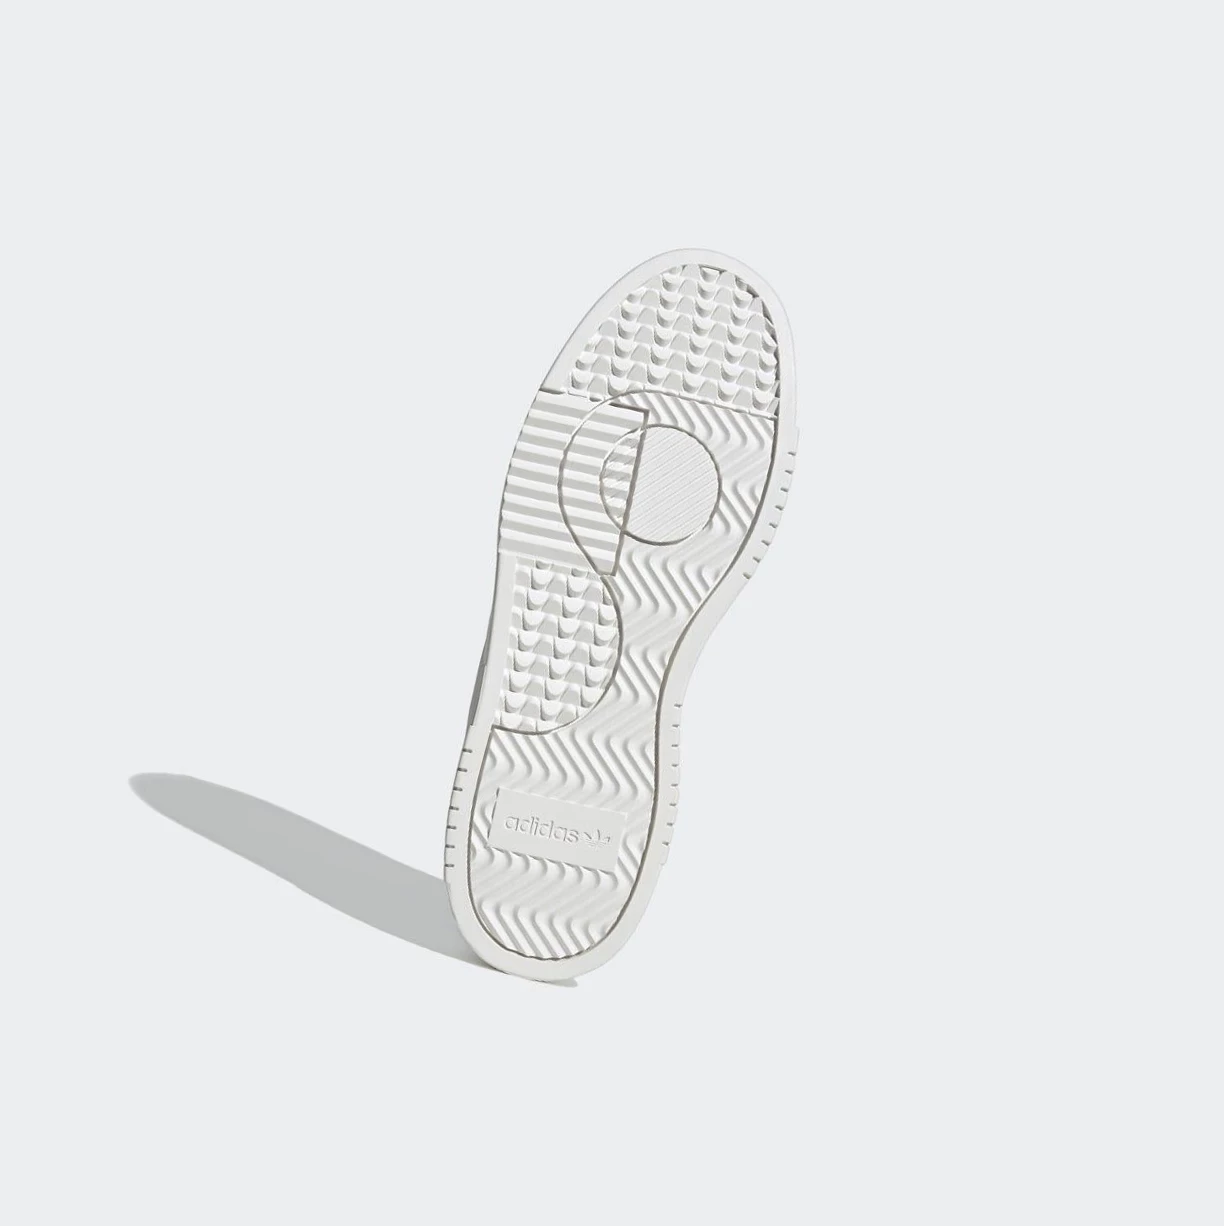 Originálne Topánky Adidas Supercourt Panske Biele | 812SKQTDKLC